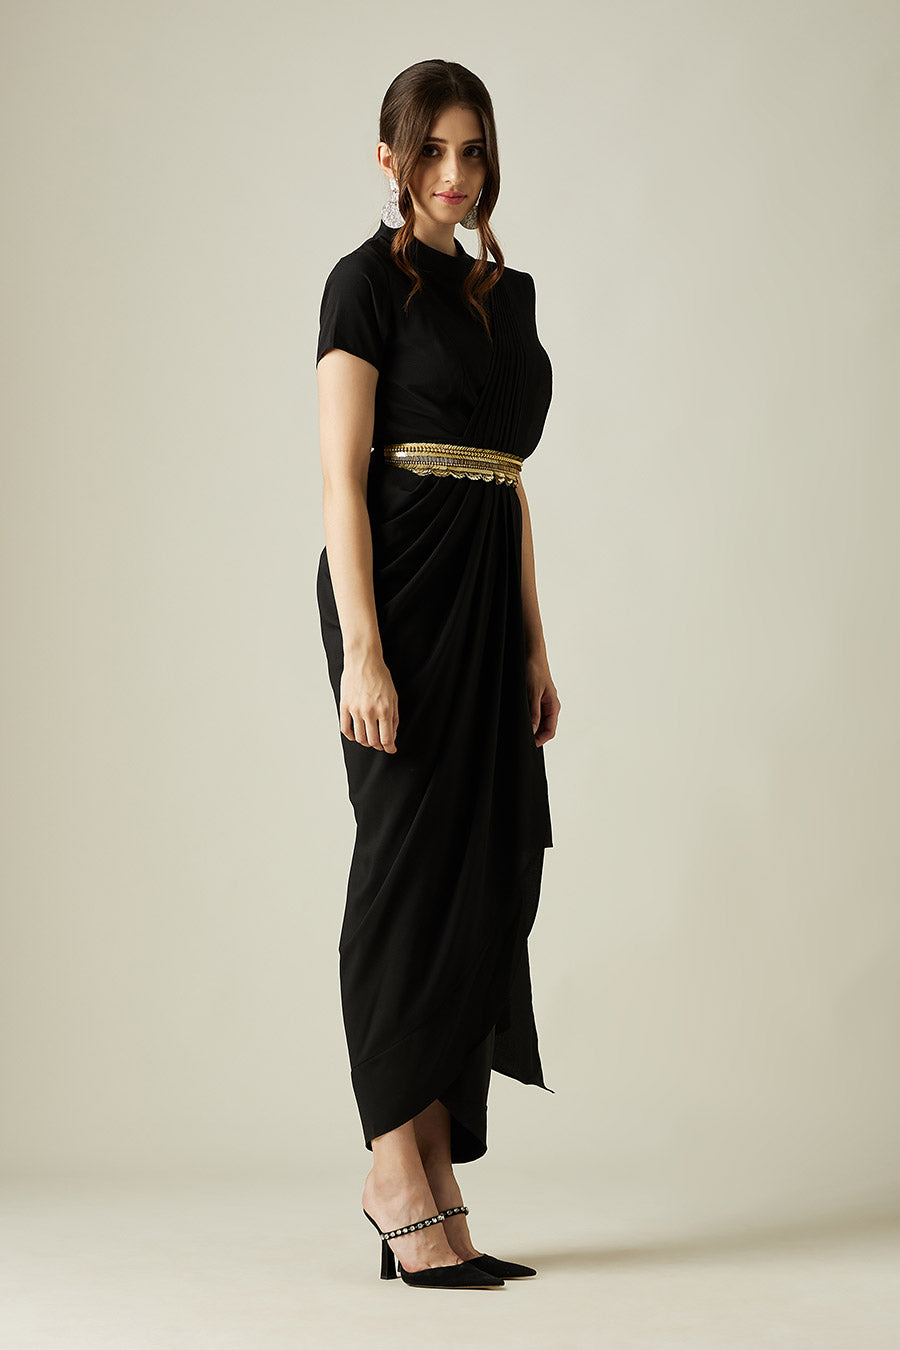 Black Saree Dress With Molten Gold Belt